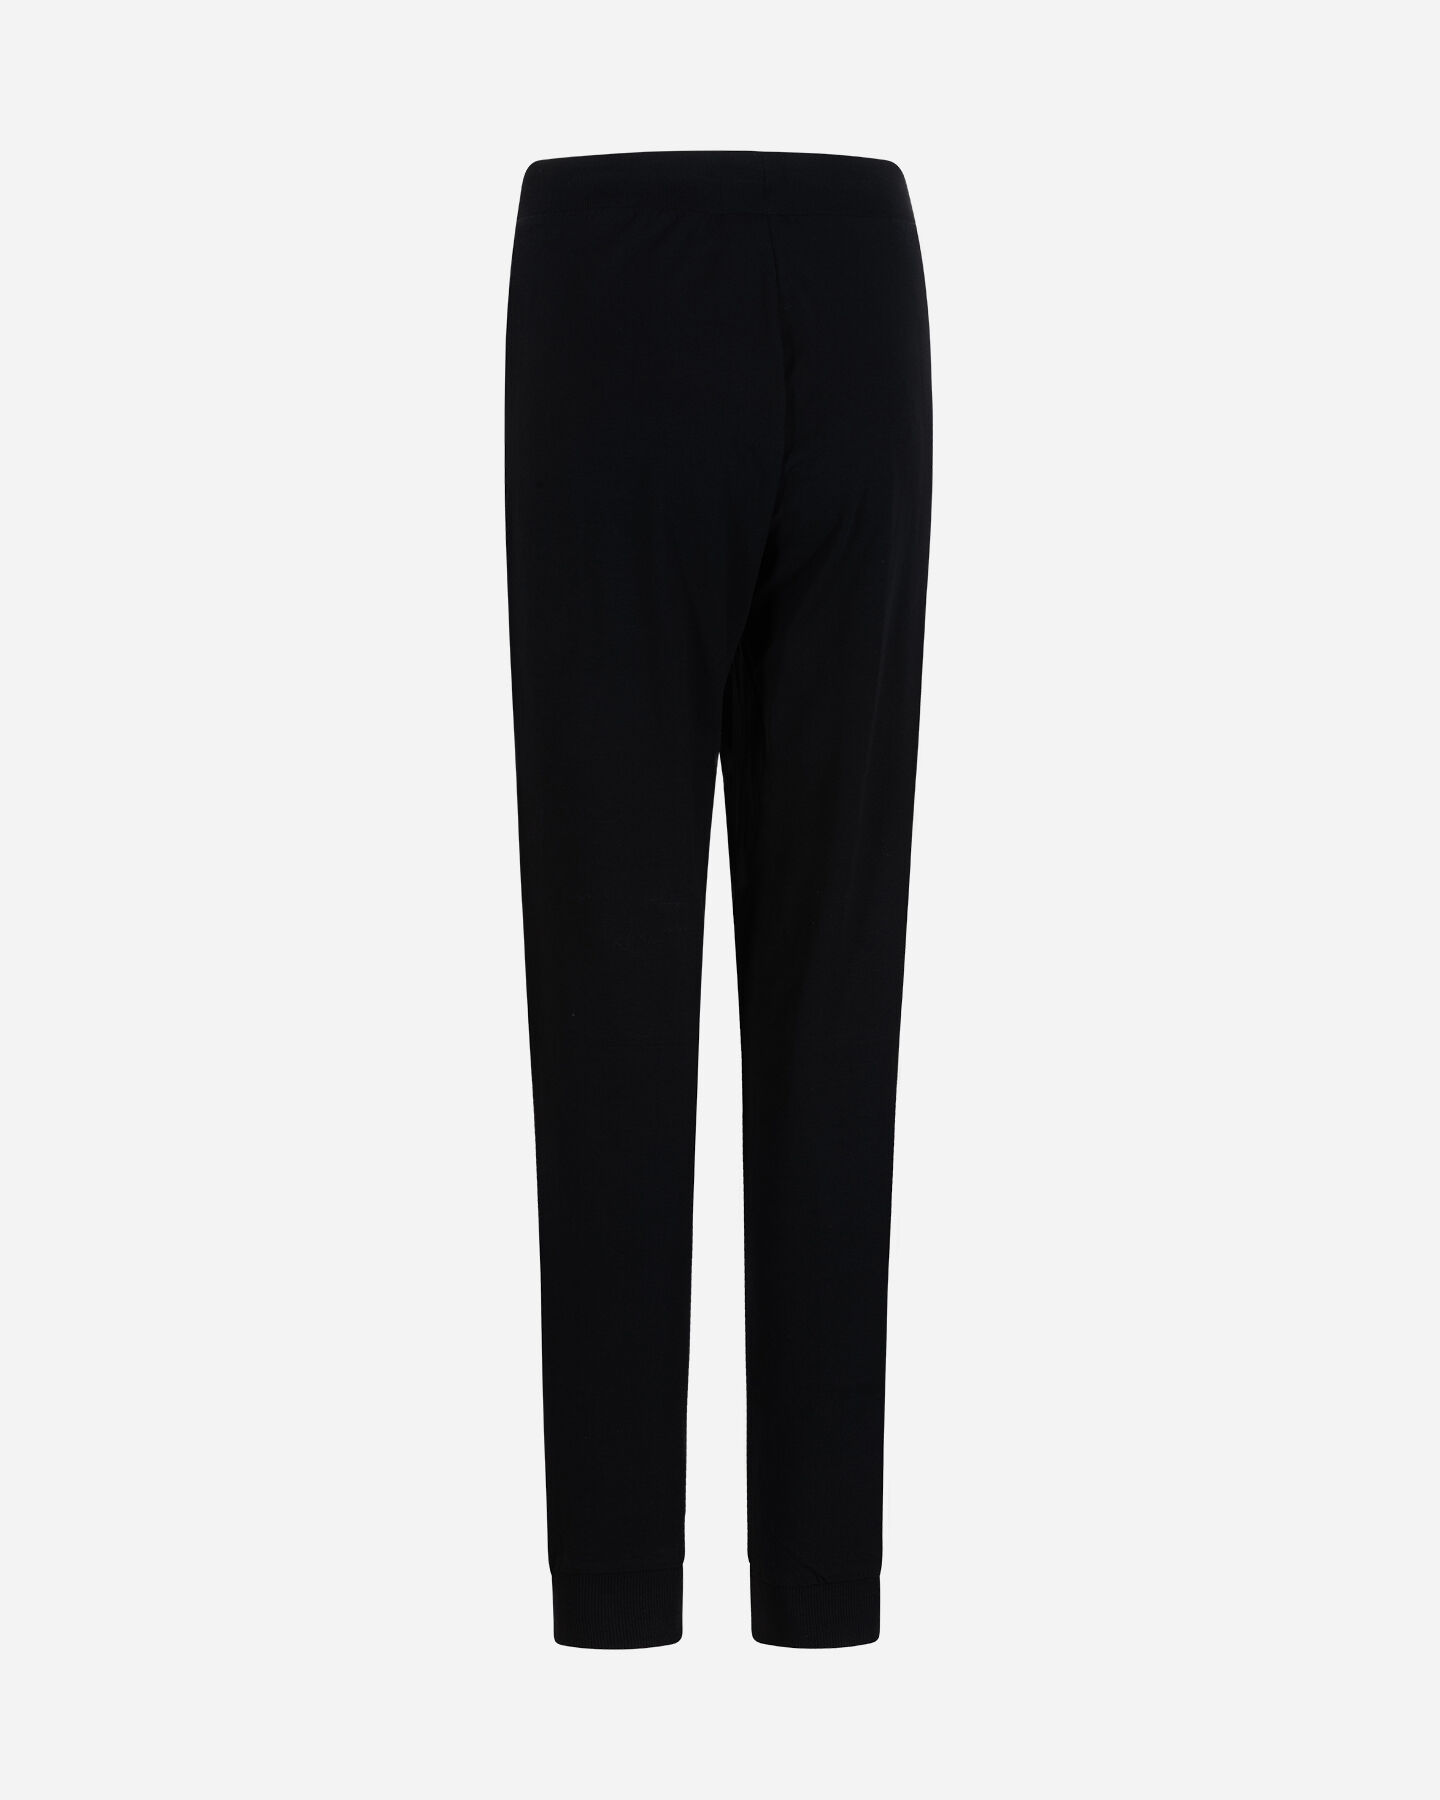  Pantalone FREDDY SMALL LOGO W S5617325|N-|XL scatto 1